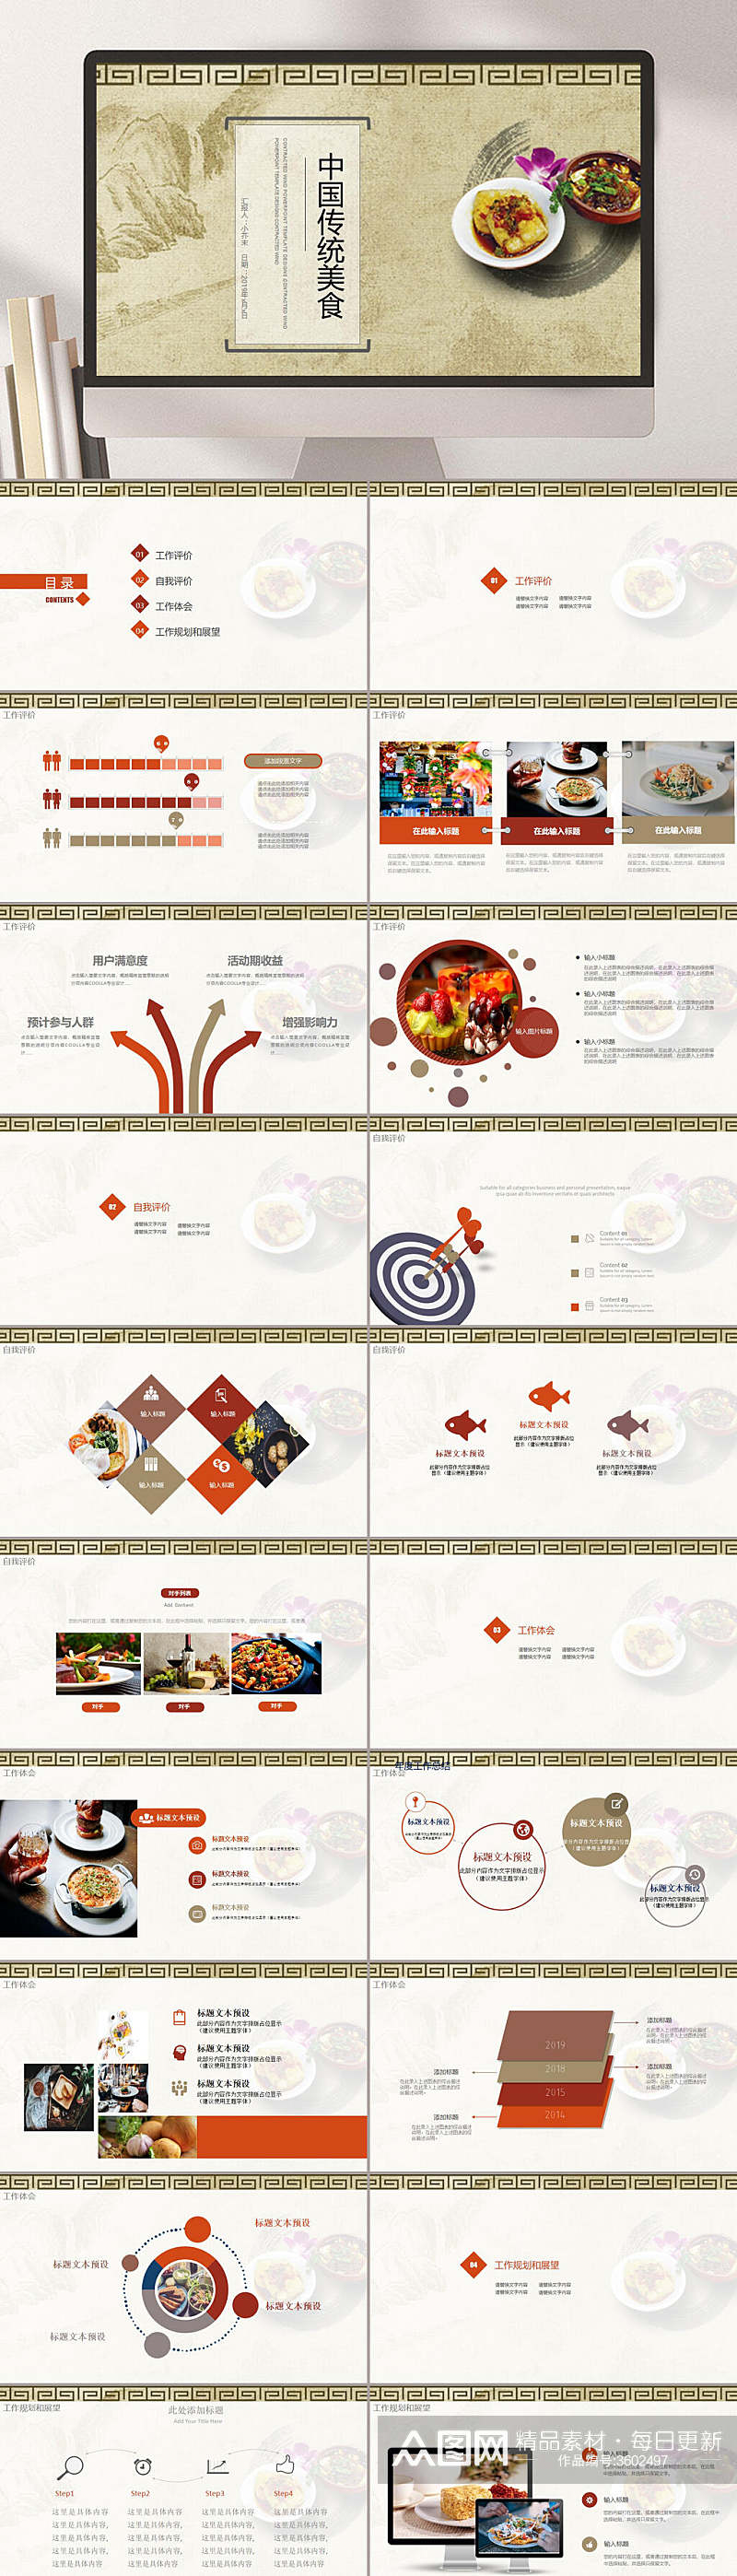 中国风中国传统美食PPT素材